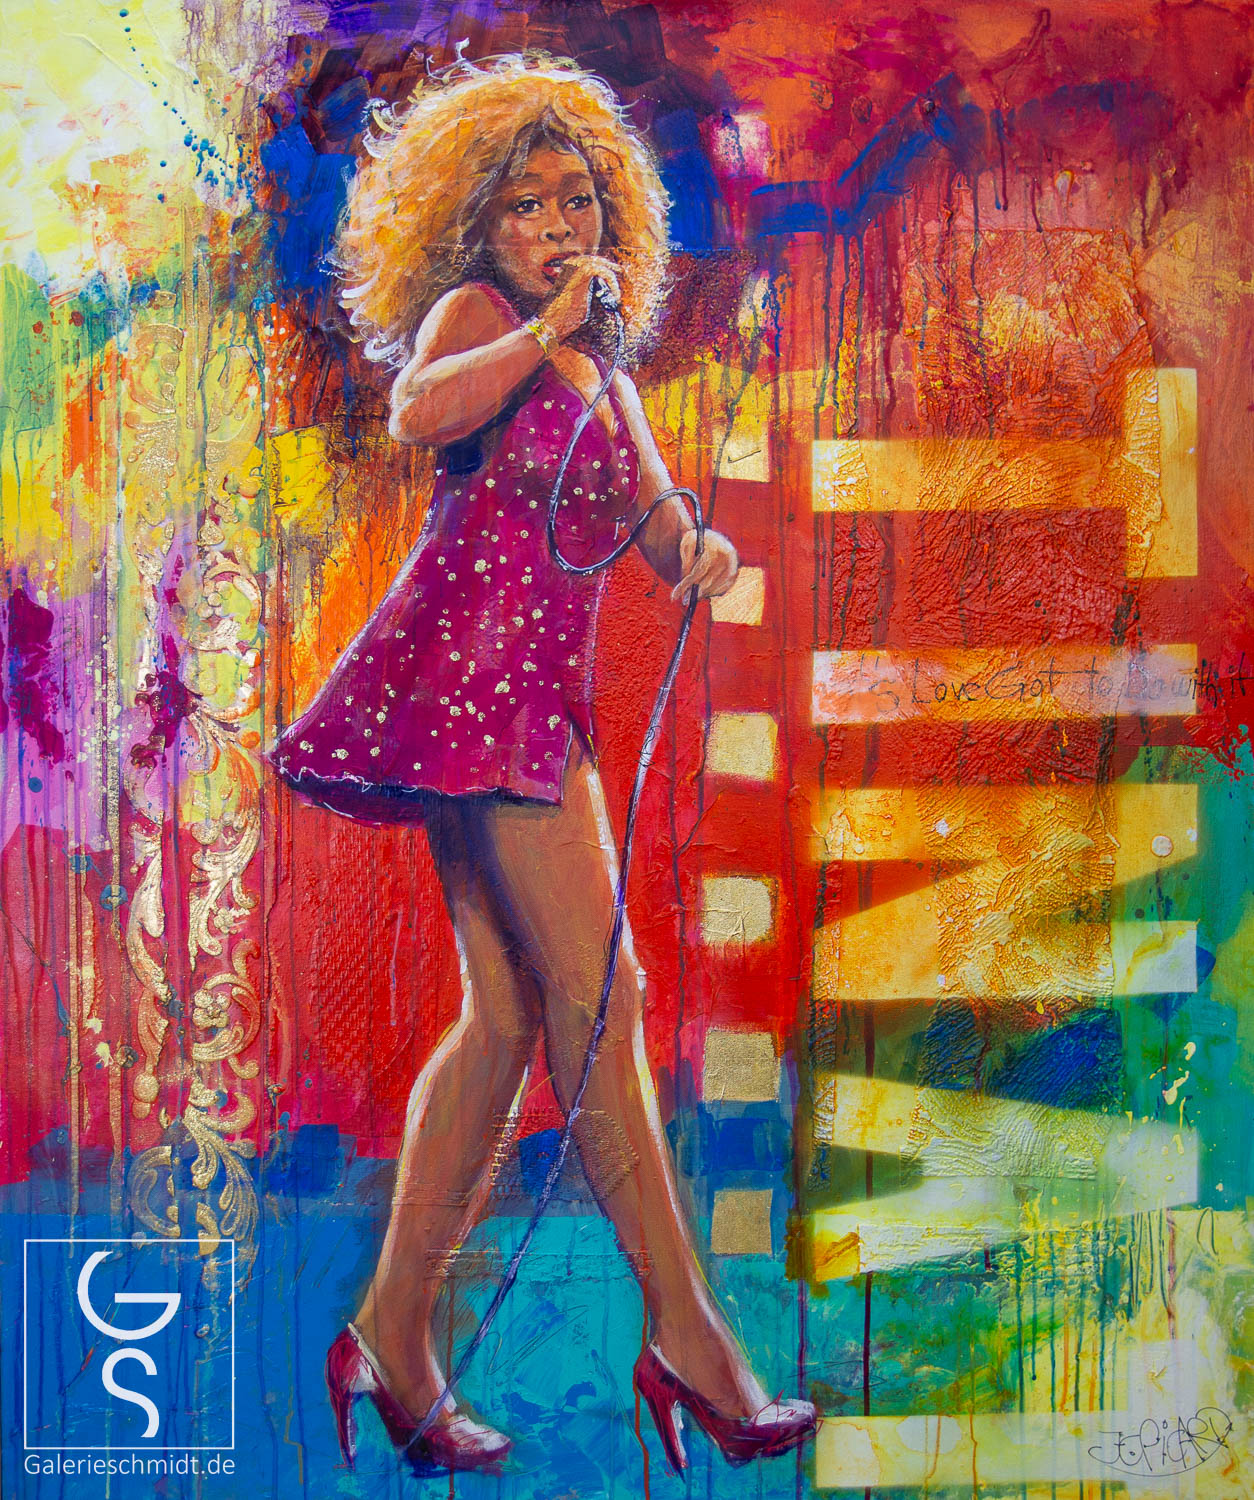 Tina Turner in Farbenpracht von Jean-Claude Picard, Tine Turner Pop-Art Gemälde